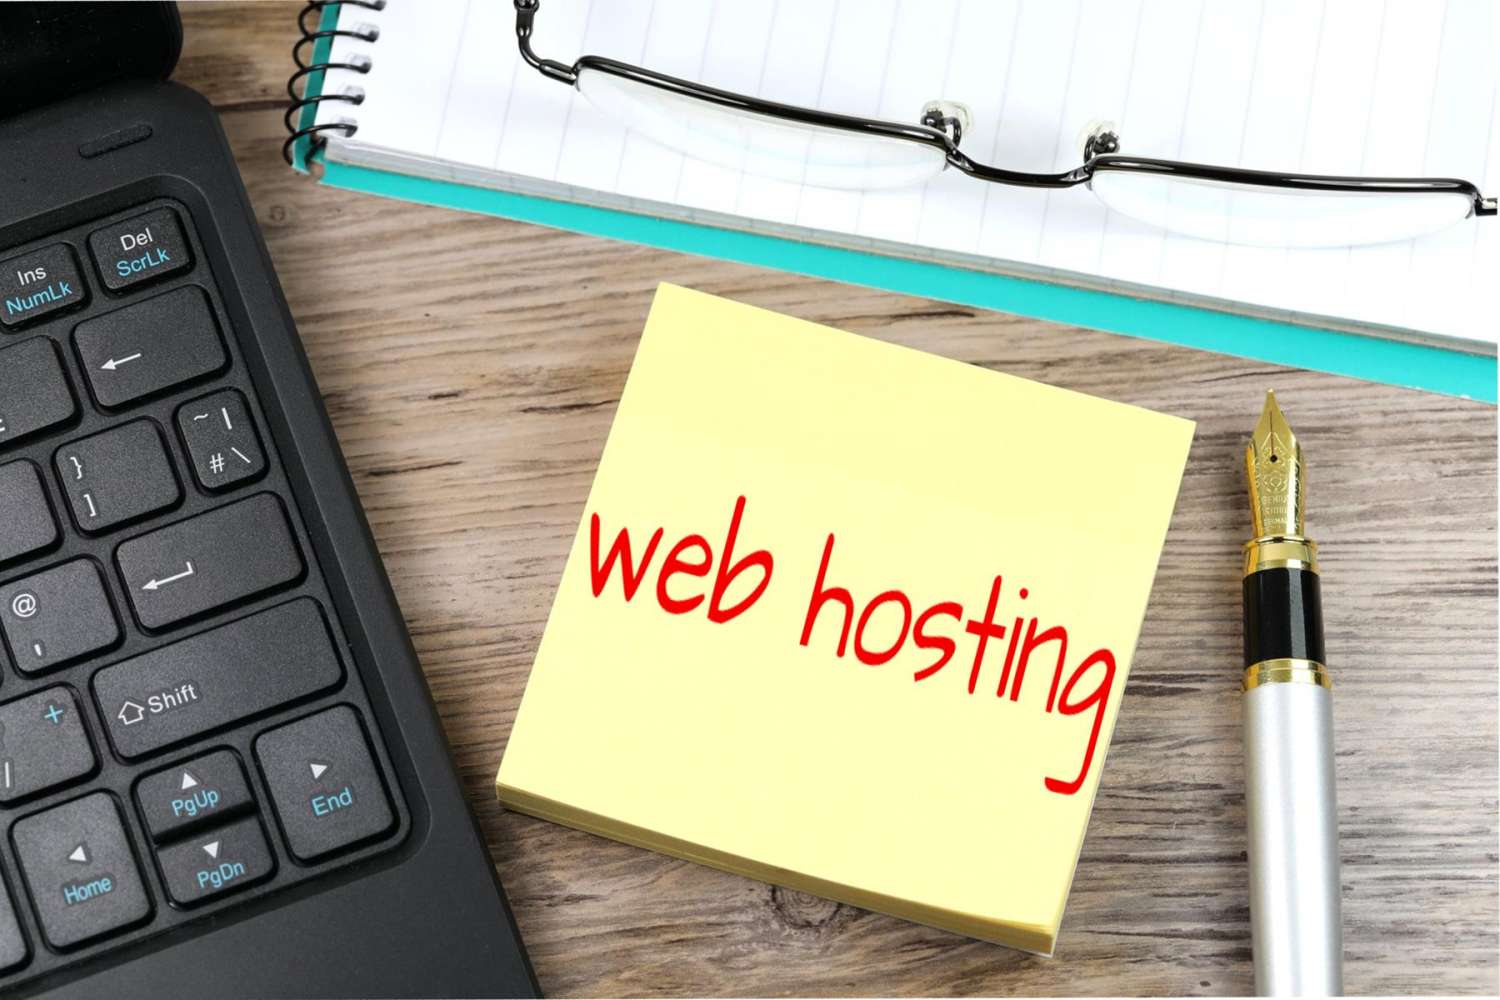 <a href="https://interlinccommunications.com/tag/affordable-wordpress-hosting/" title="Affordable WordPress Hosting">Affordable WordPress Hosting</a>,<a href="https://interlinccommunications.com/tag/high-performance-hosting/" title="High Performance Hosting">High Performance Hosting</a>,<a href="https://interlinccommunications.com/tag/hosting/" title="Hosting">Hosting</a>,<a href="https://interlinccommunications.com/tag/managed-wordpress-hosting/" title="Managed WordPress Hosting">Managed WordPress Hosting</a>,<a href="https://interlinccommunications.com/tag/reliable-wordpress-hosting/" title="Reliable WordPress Hosting">Reliable WordPress Hosting</a>,<a href="https://interlinccommunications.com/tag/small-business-hosting/" title="Small Business Hosting">Small Business Hosting</a>,<a href="https://interlinccommunications.com/tag/web-hosting/" title="Web Hosting">Web Hosting</a>,<a href="https://interlinccommunications.com/tag/website-hosting/" title="Website Hosting">Website Hosting</a>,<a href="https://interlinccommunications.com/tag/wordpress-hosting/" title="Wordpress Hosting">Wordpress Hosting</a> - Interlinc Communications